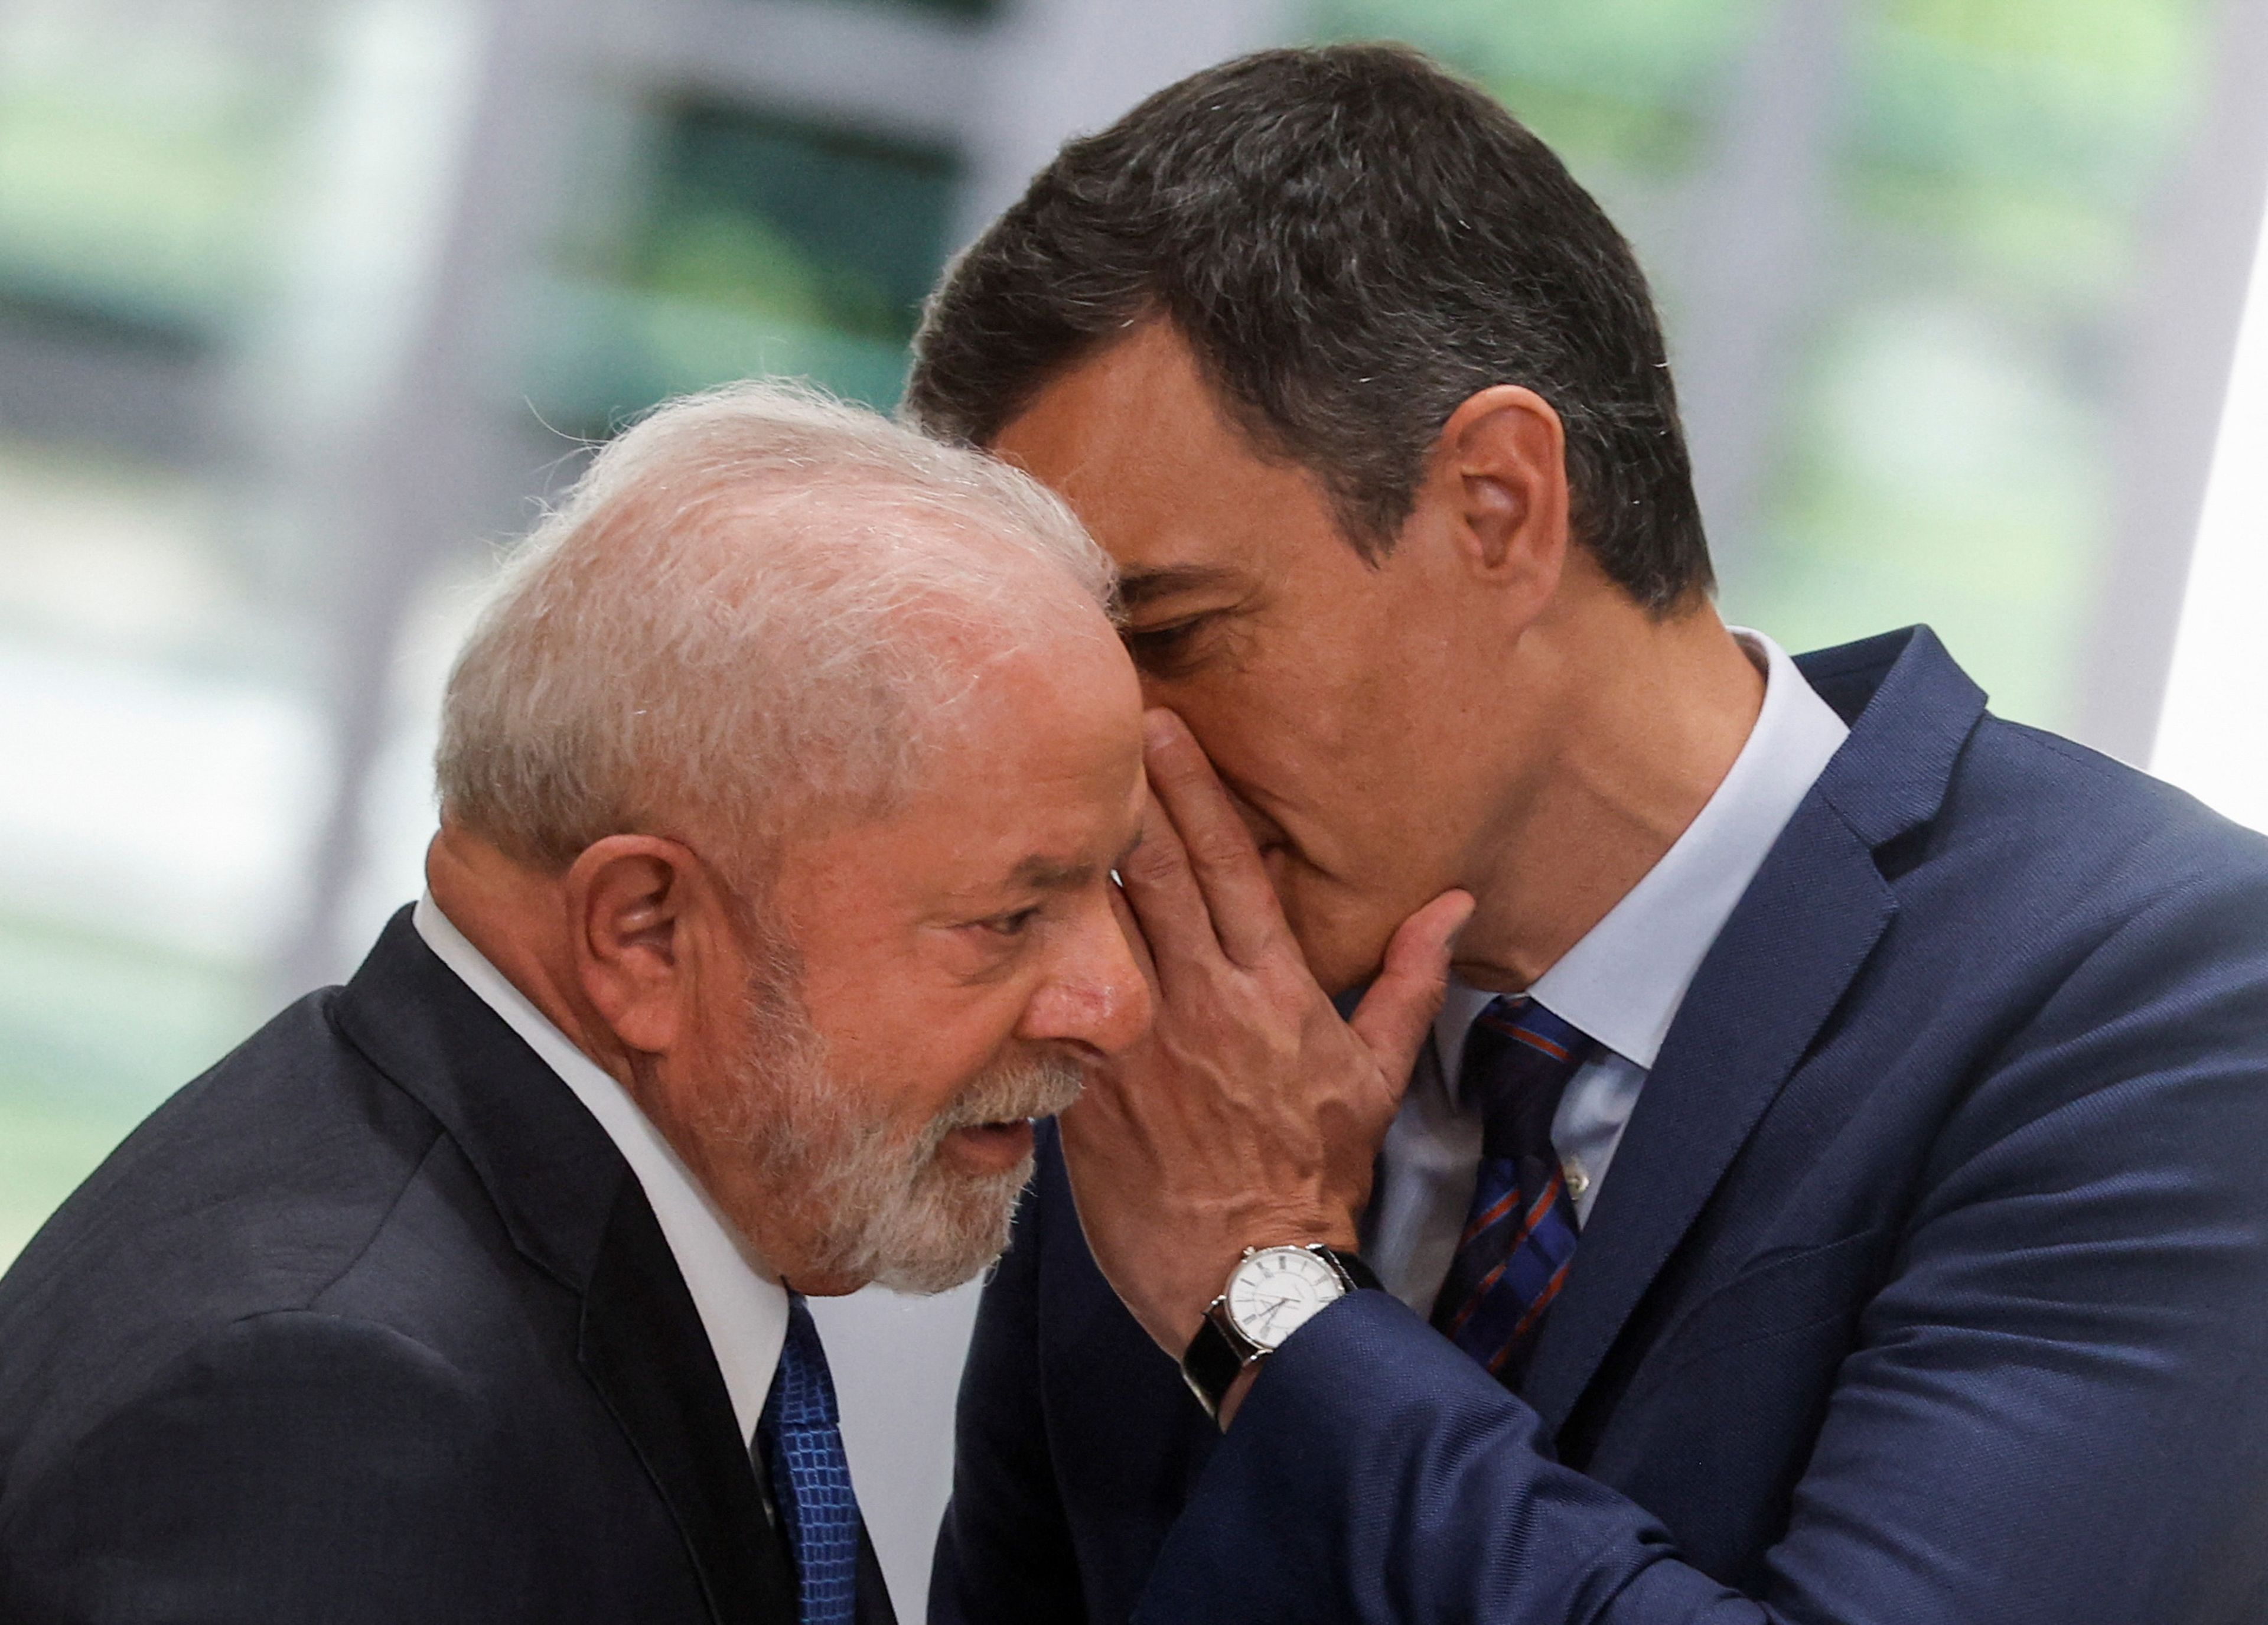 Pedro Sánchez diciéndole algo al oído a Lula da Silva, presidente de Brasil.